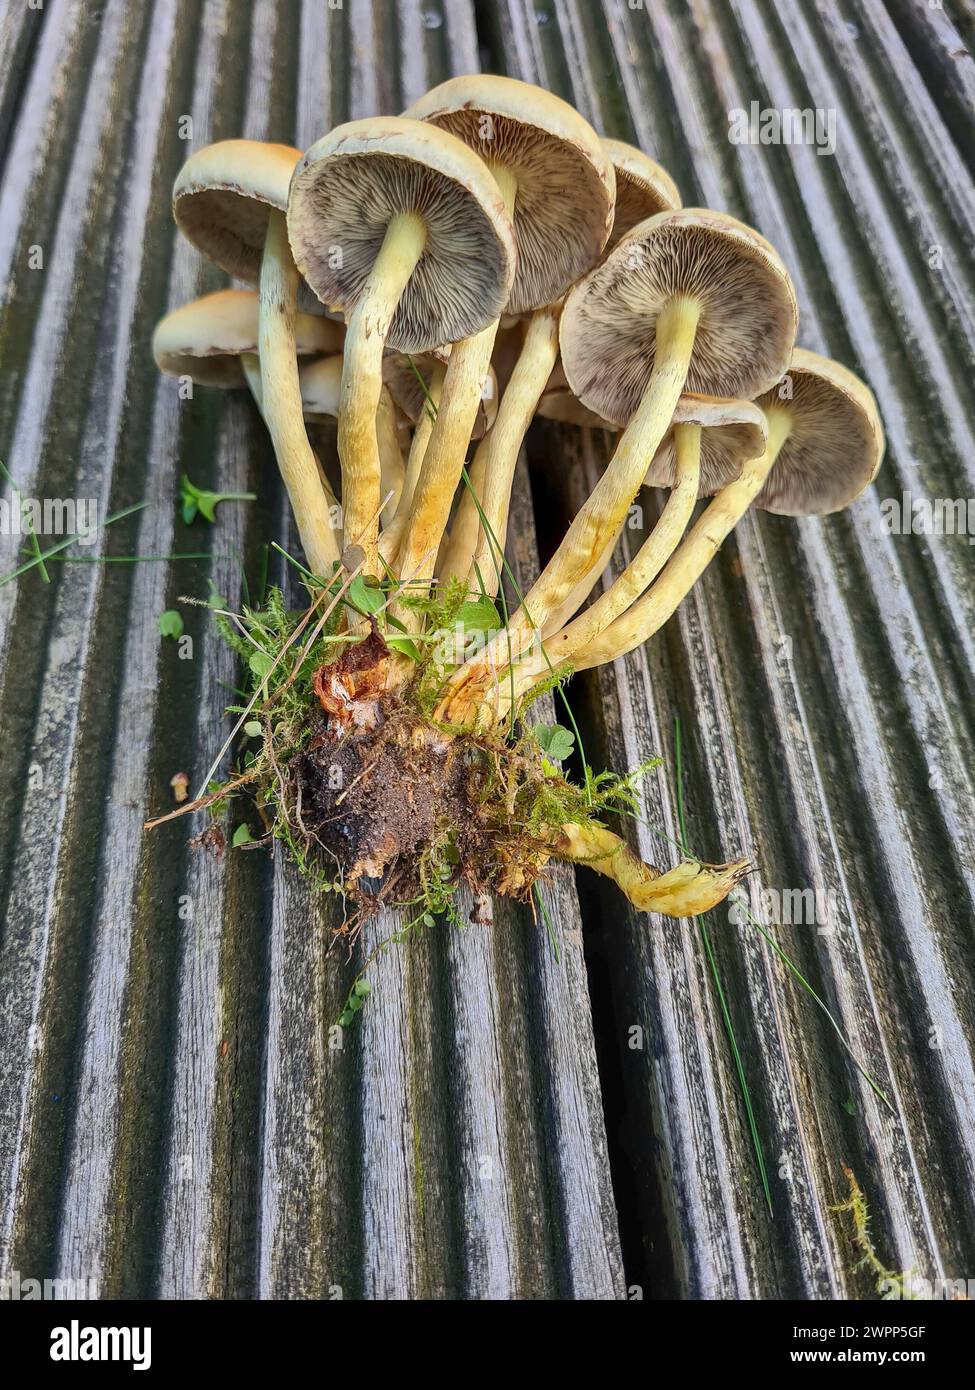 Funghi appena coltivati adagiati in un mazzo sul pavimento in legno della terrazza, vista dal basso delle lamelle sul lato inferiore del fungo, Germania Foto Stock